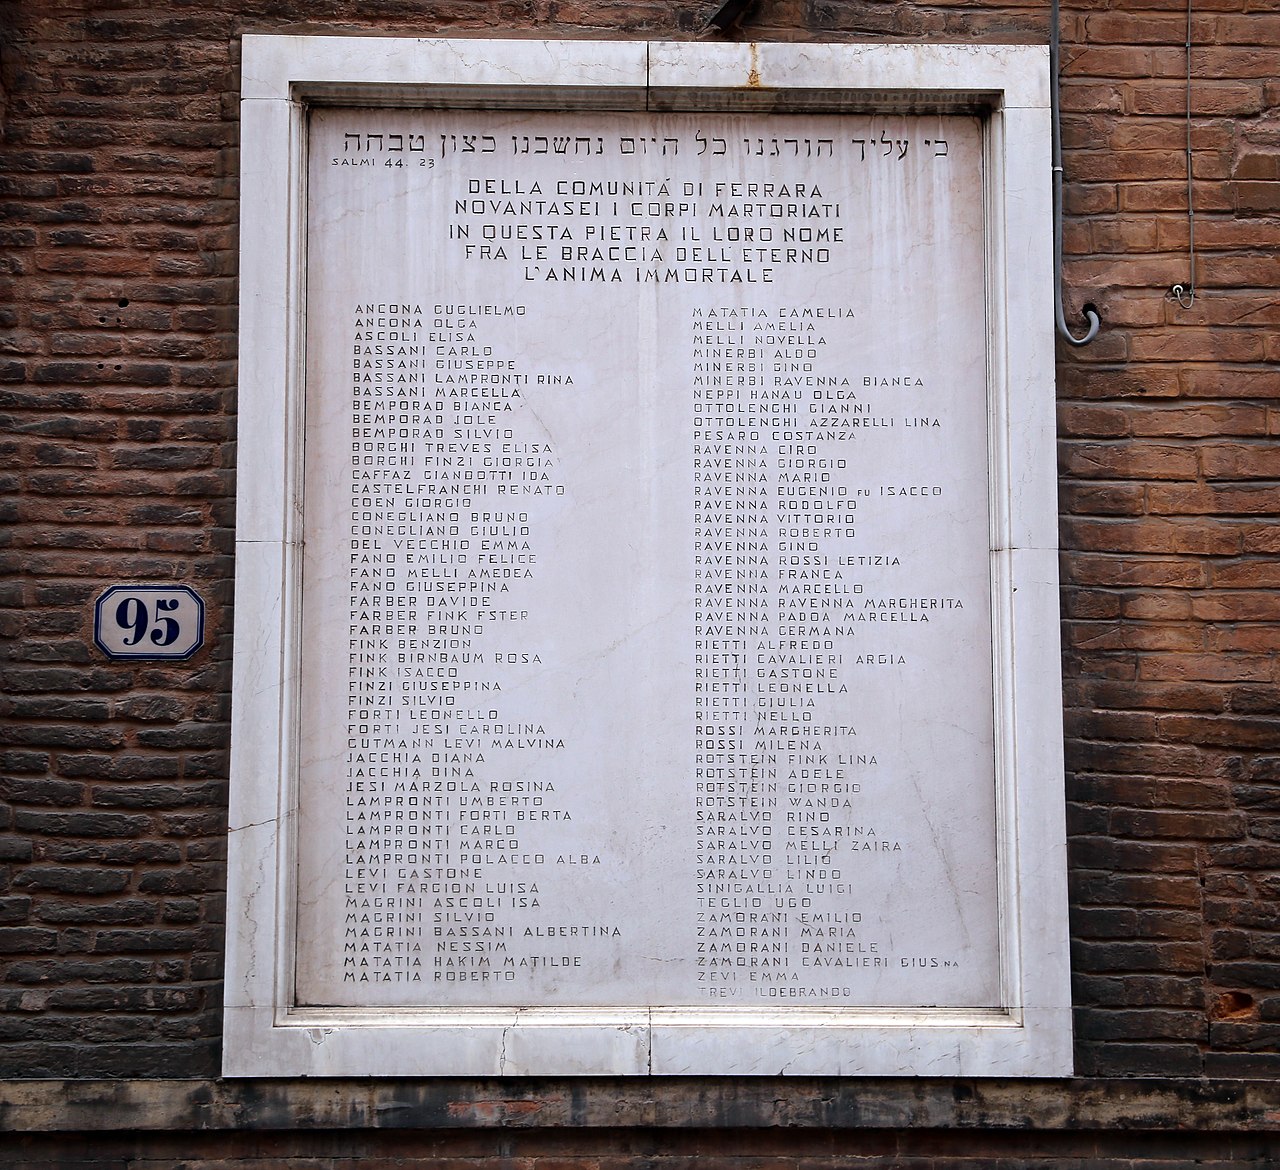 Epigrafe posta in via Mazzini a Ferrara, di lato all'ingresso della sinagoga. Il nome MAGRINI ASCOLI ISA si legge verso la fine dell'elenco nella colonna di sinistra.